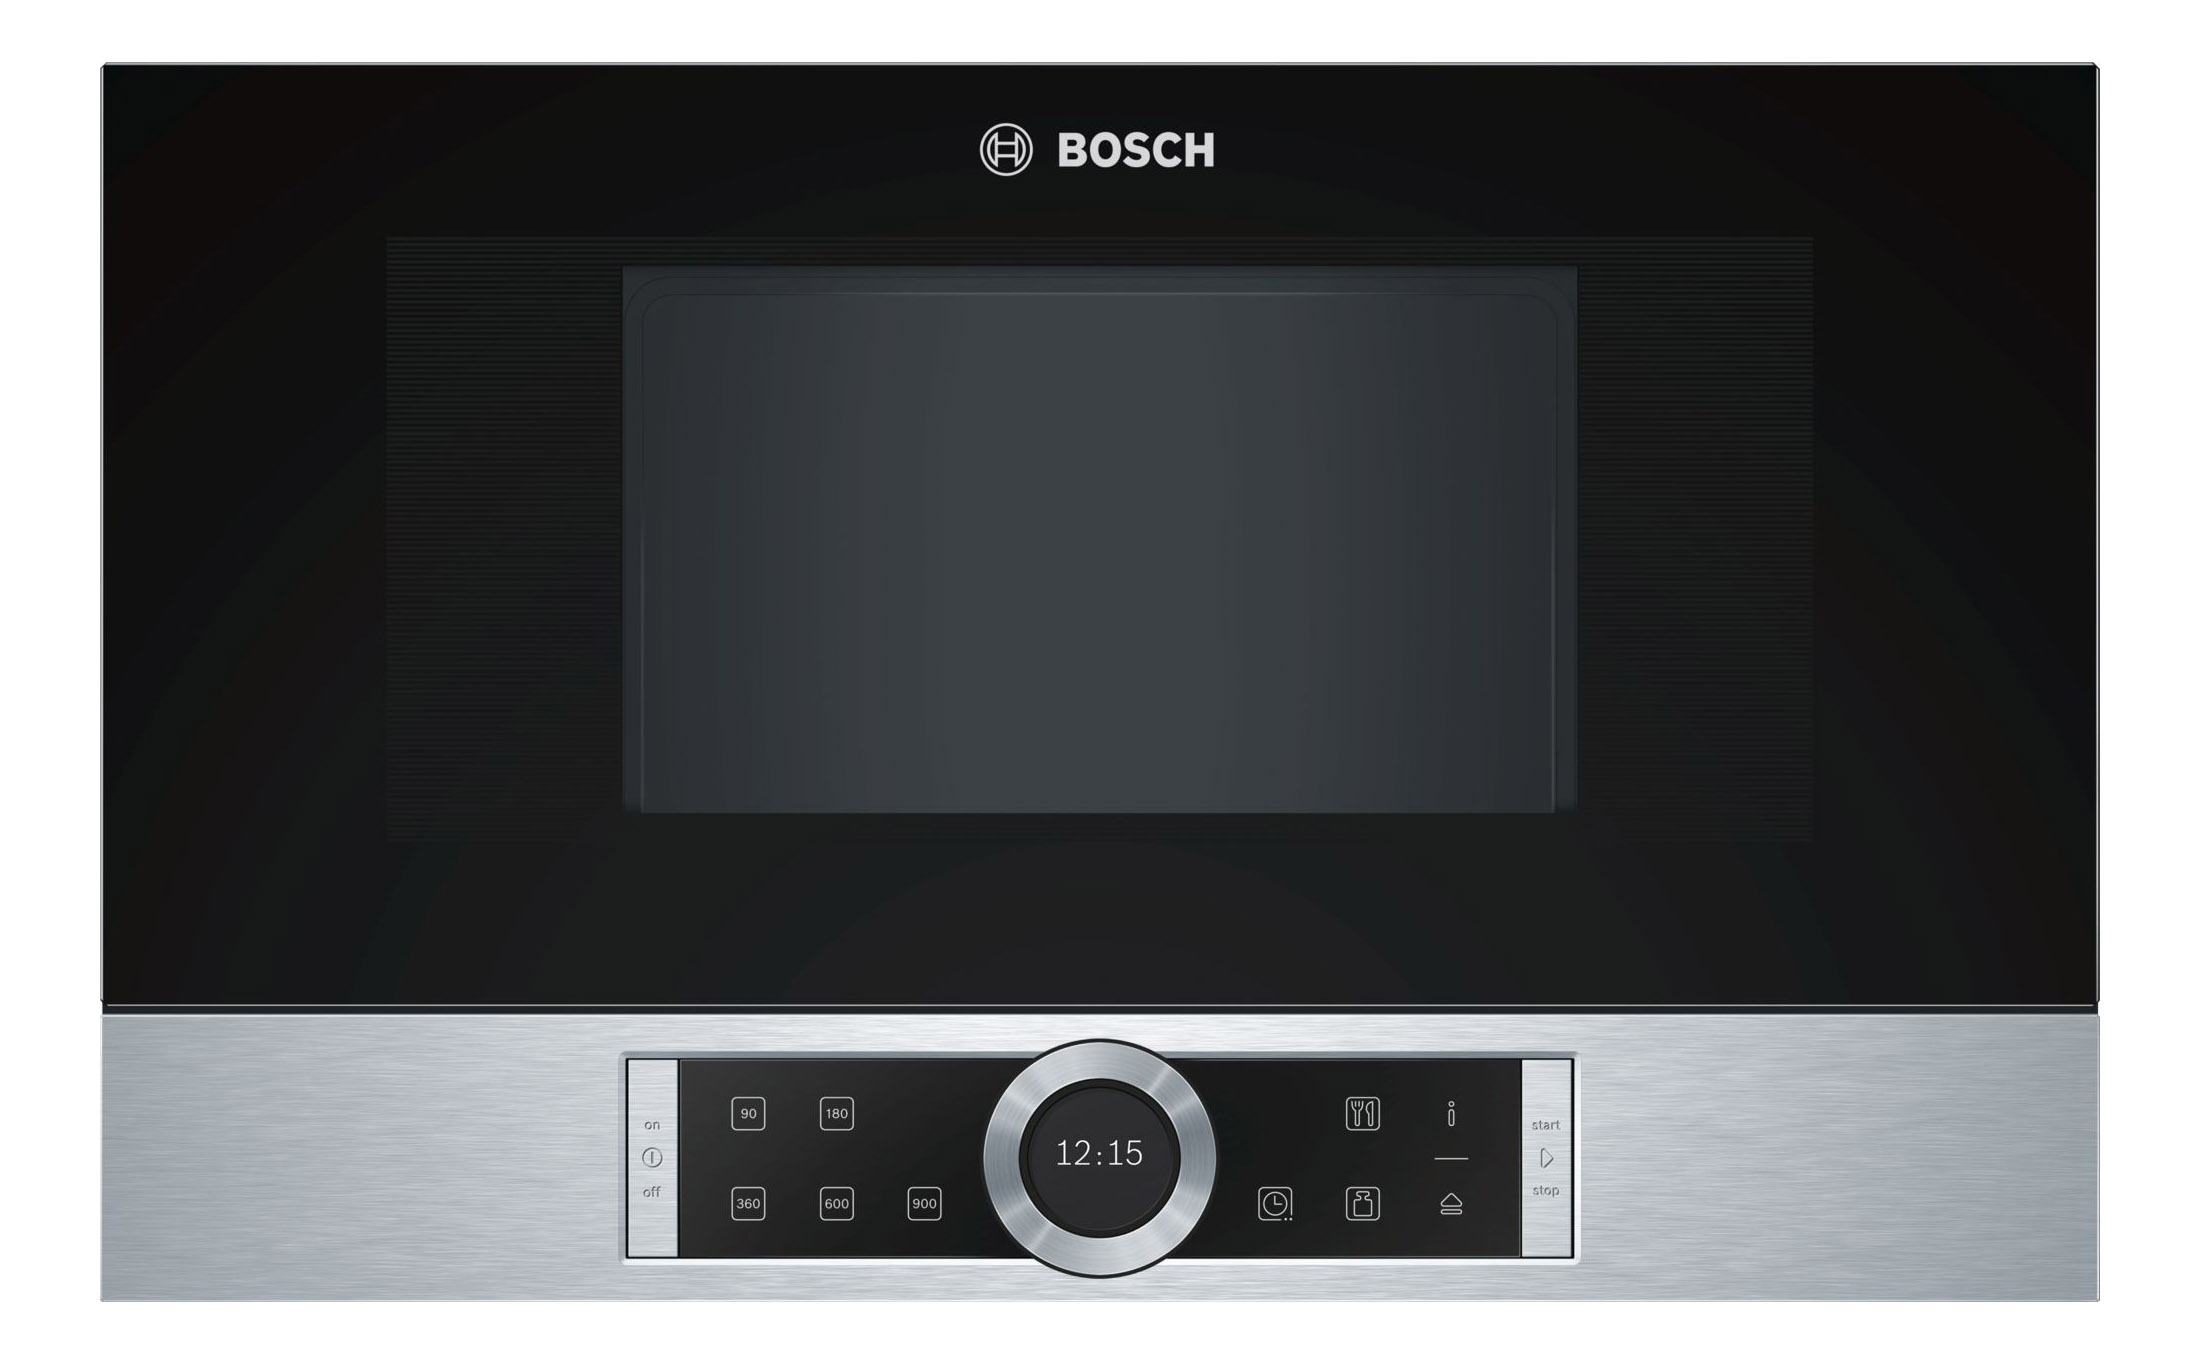 Встраиваемая микроволновая печь Bosch BFL634GS1 Black/Silver встраиваемая микроволновая печь bosch